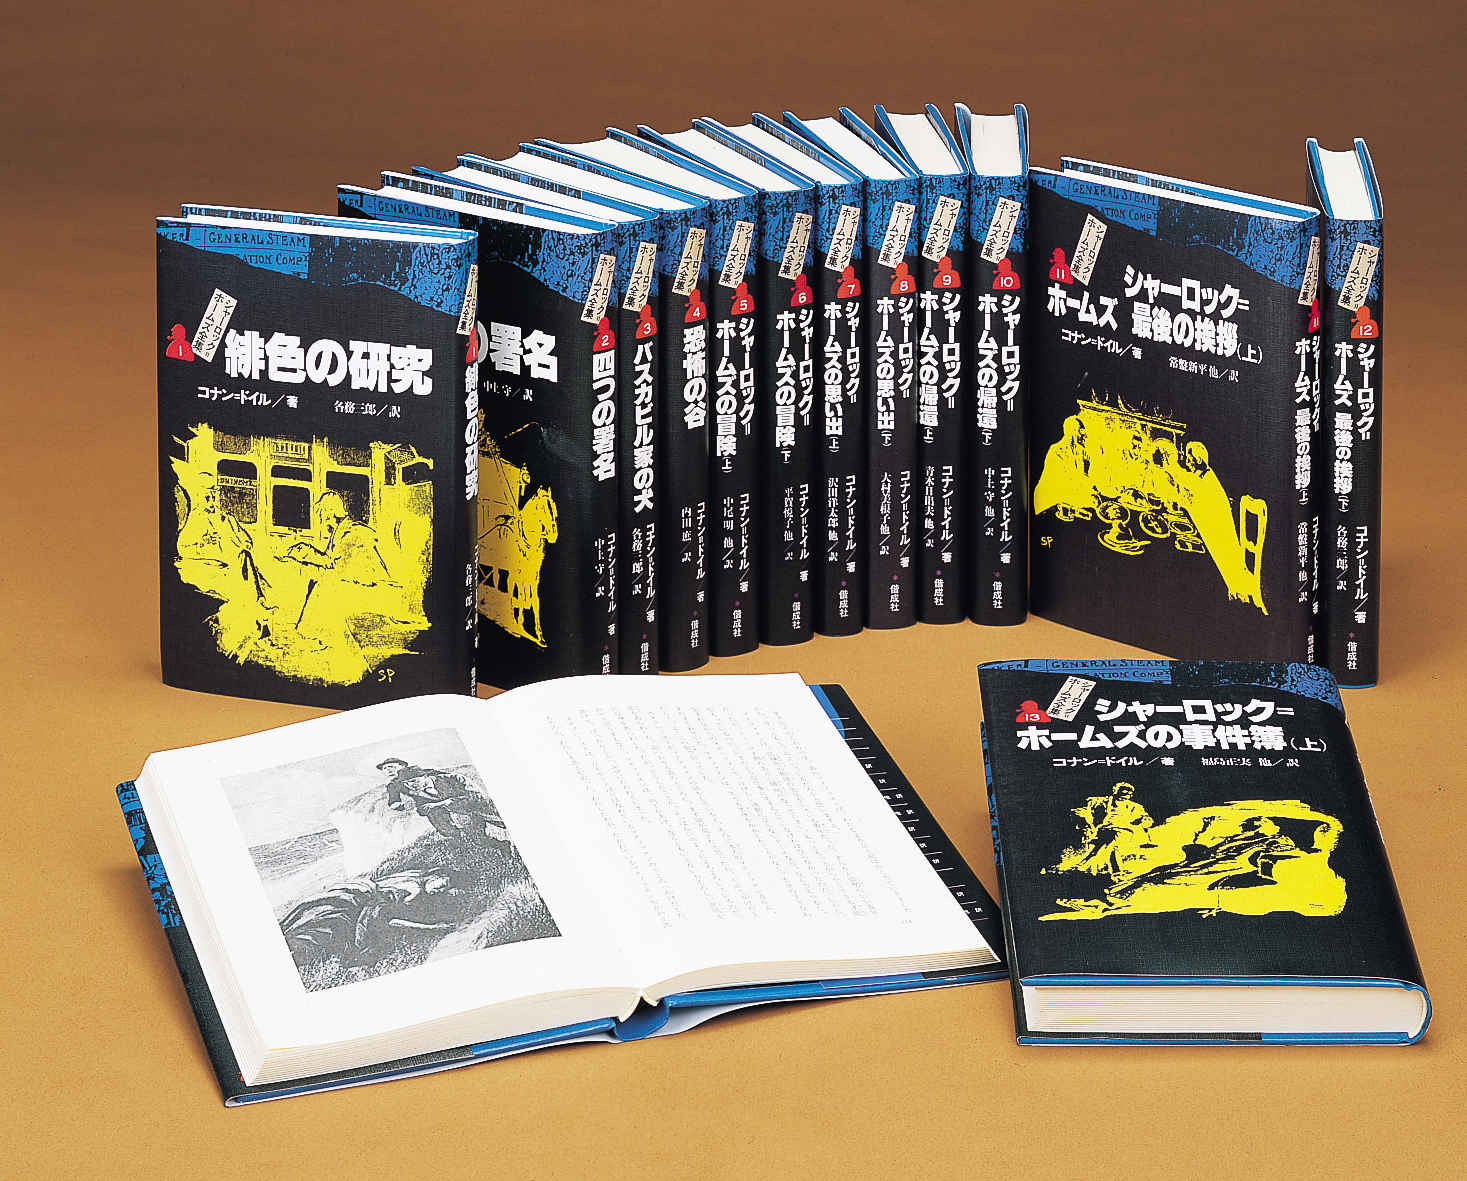 シャーロック ホームズ全集 全14巻 偕成社 児童書出版社